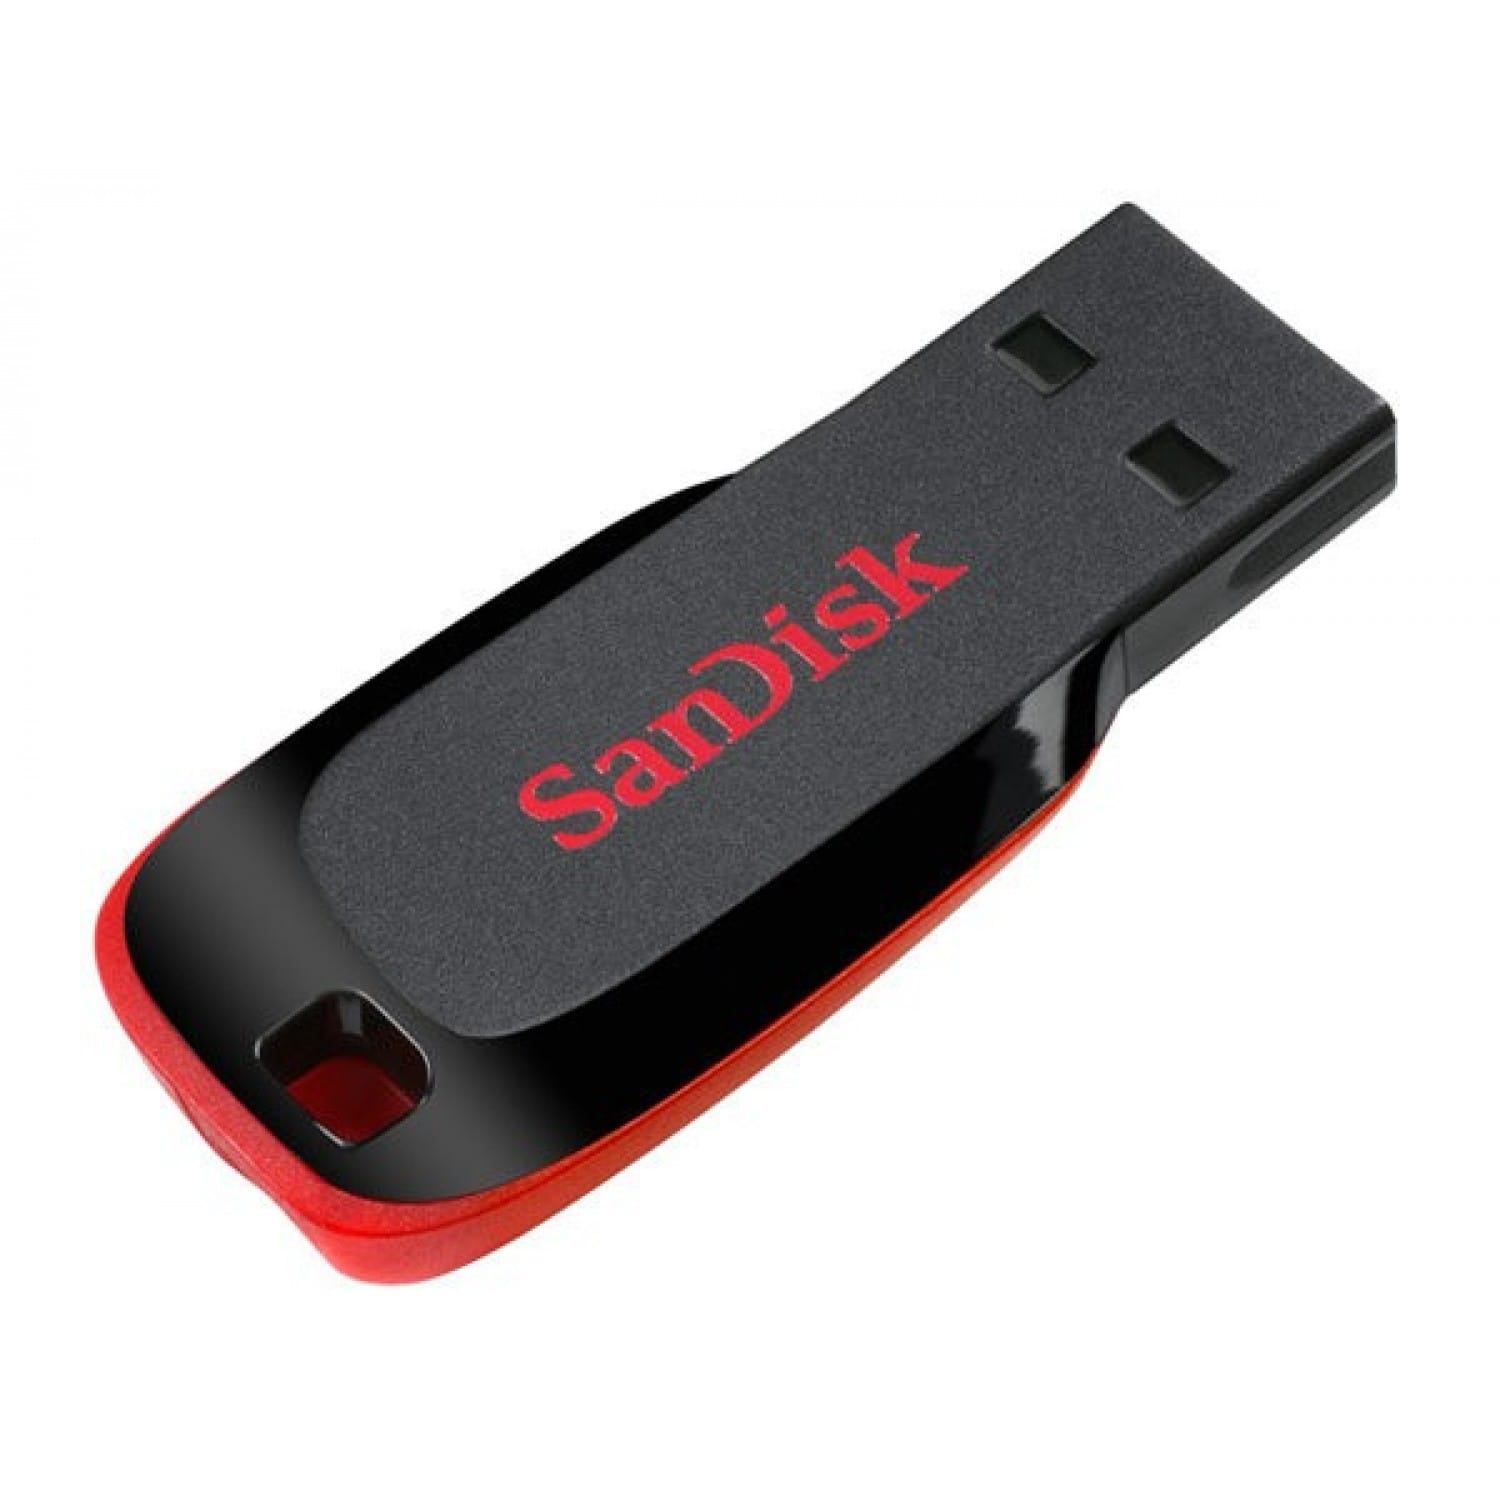 Sandisk Clé USB 32 Go - Vente matériels et accessoires informatique au  Sénégal